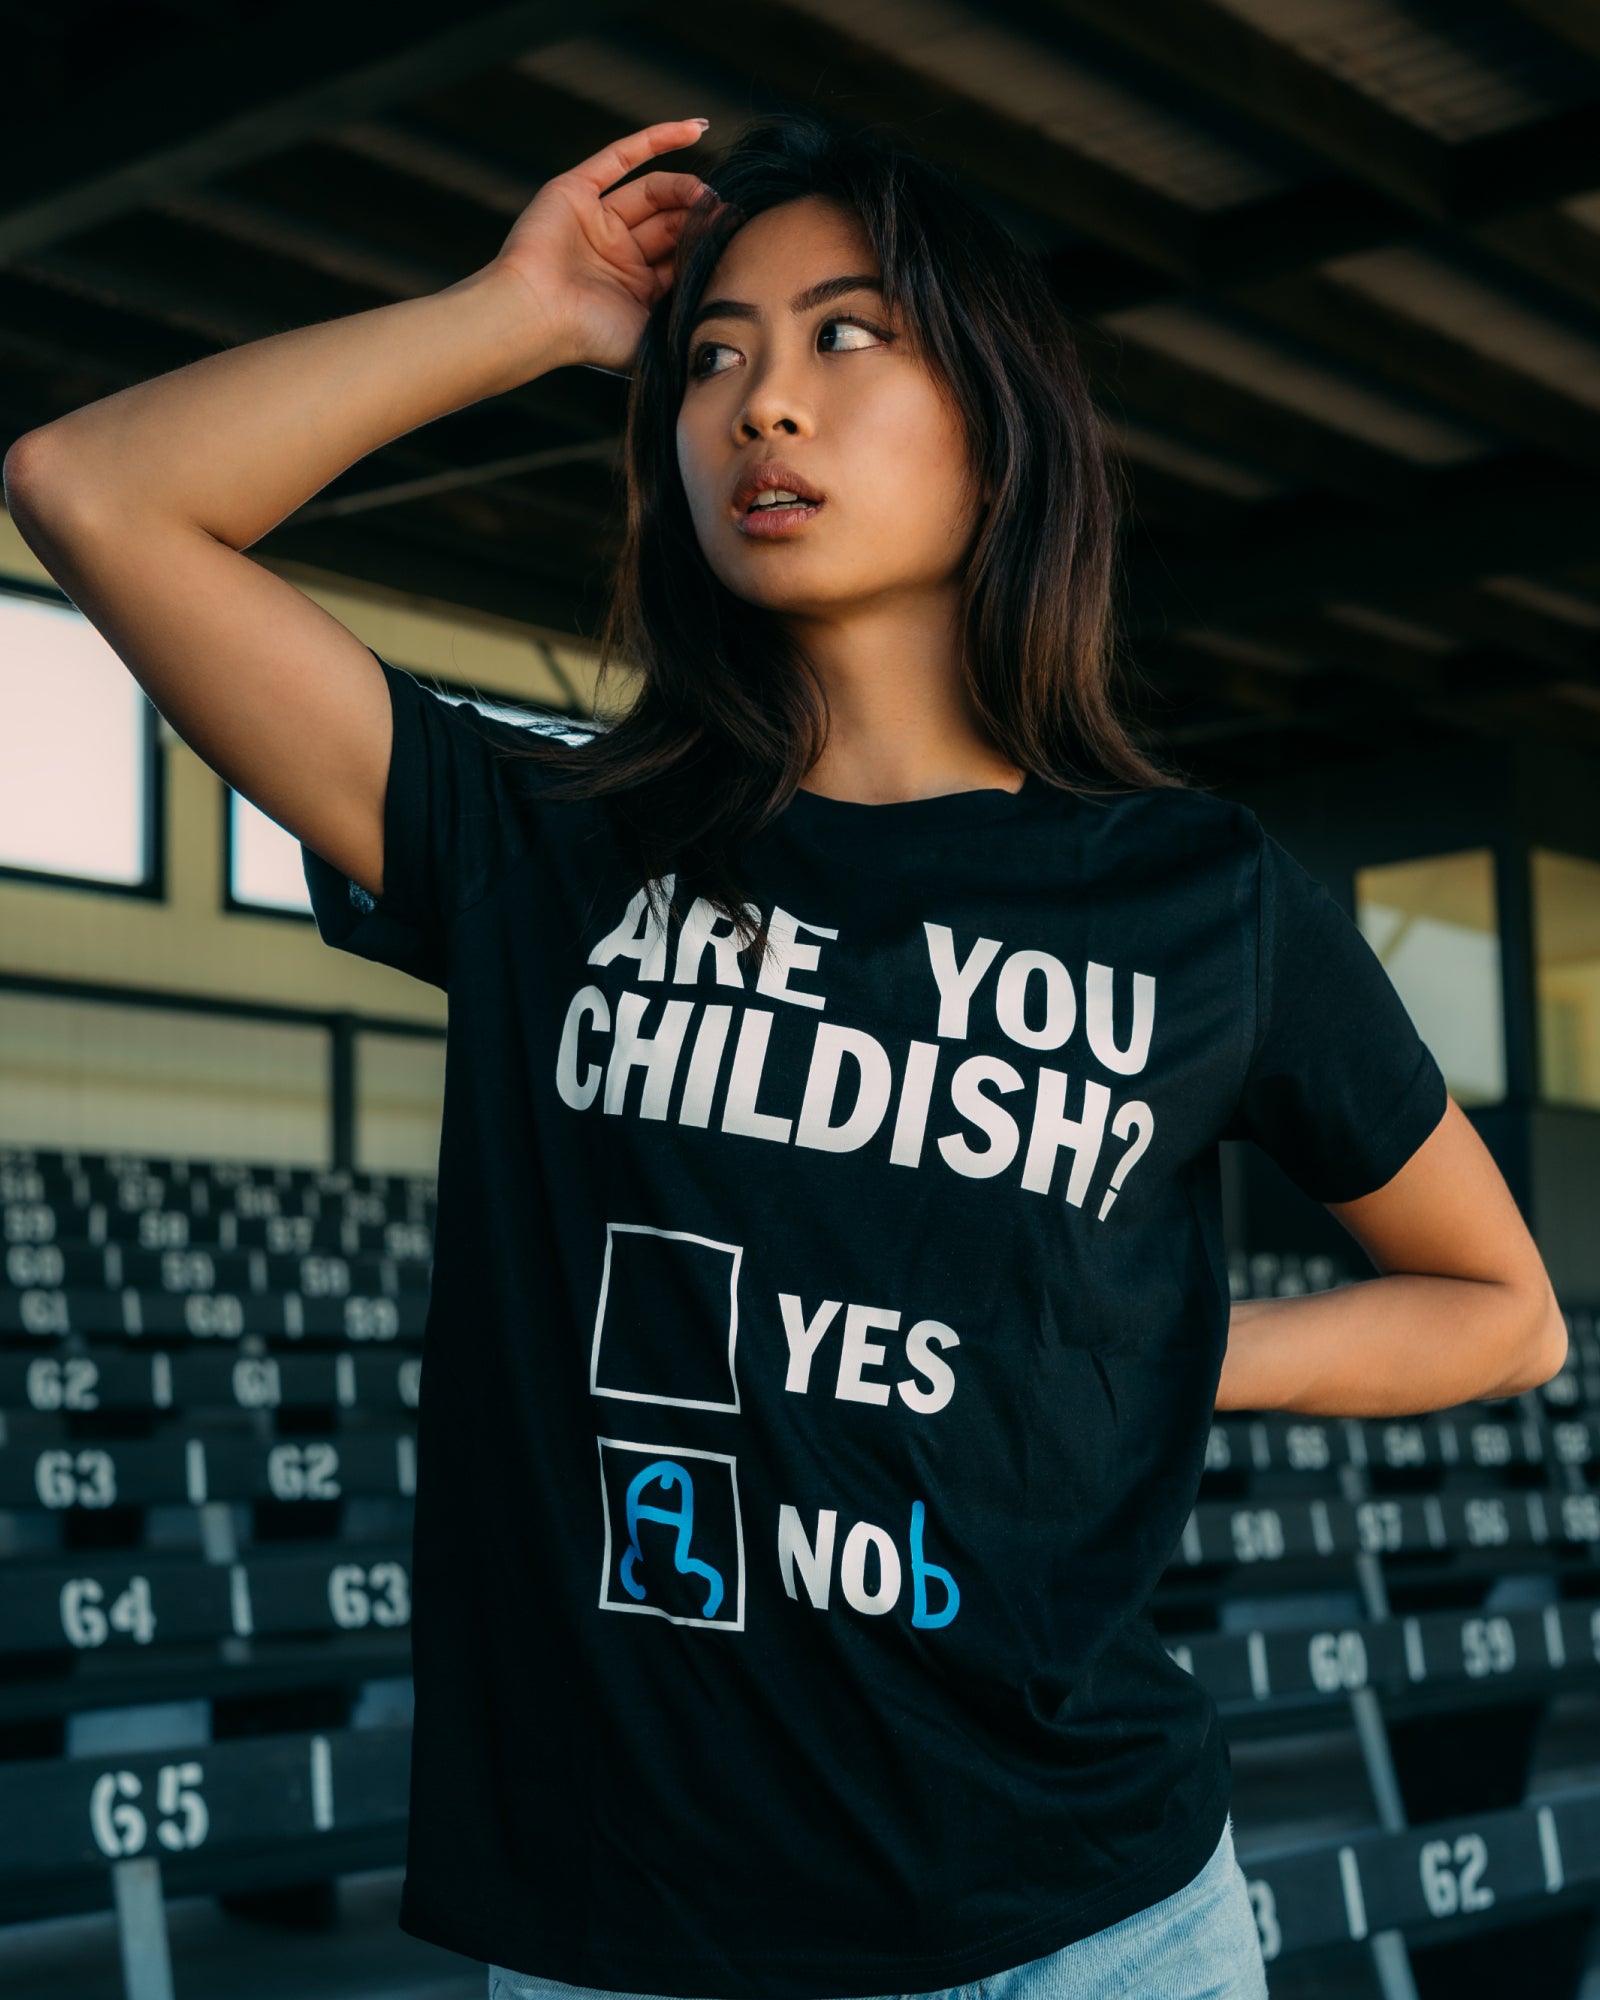 Are You Childish? T-Shirt Australia Online #colour_black